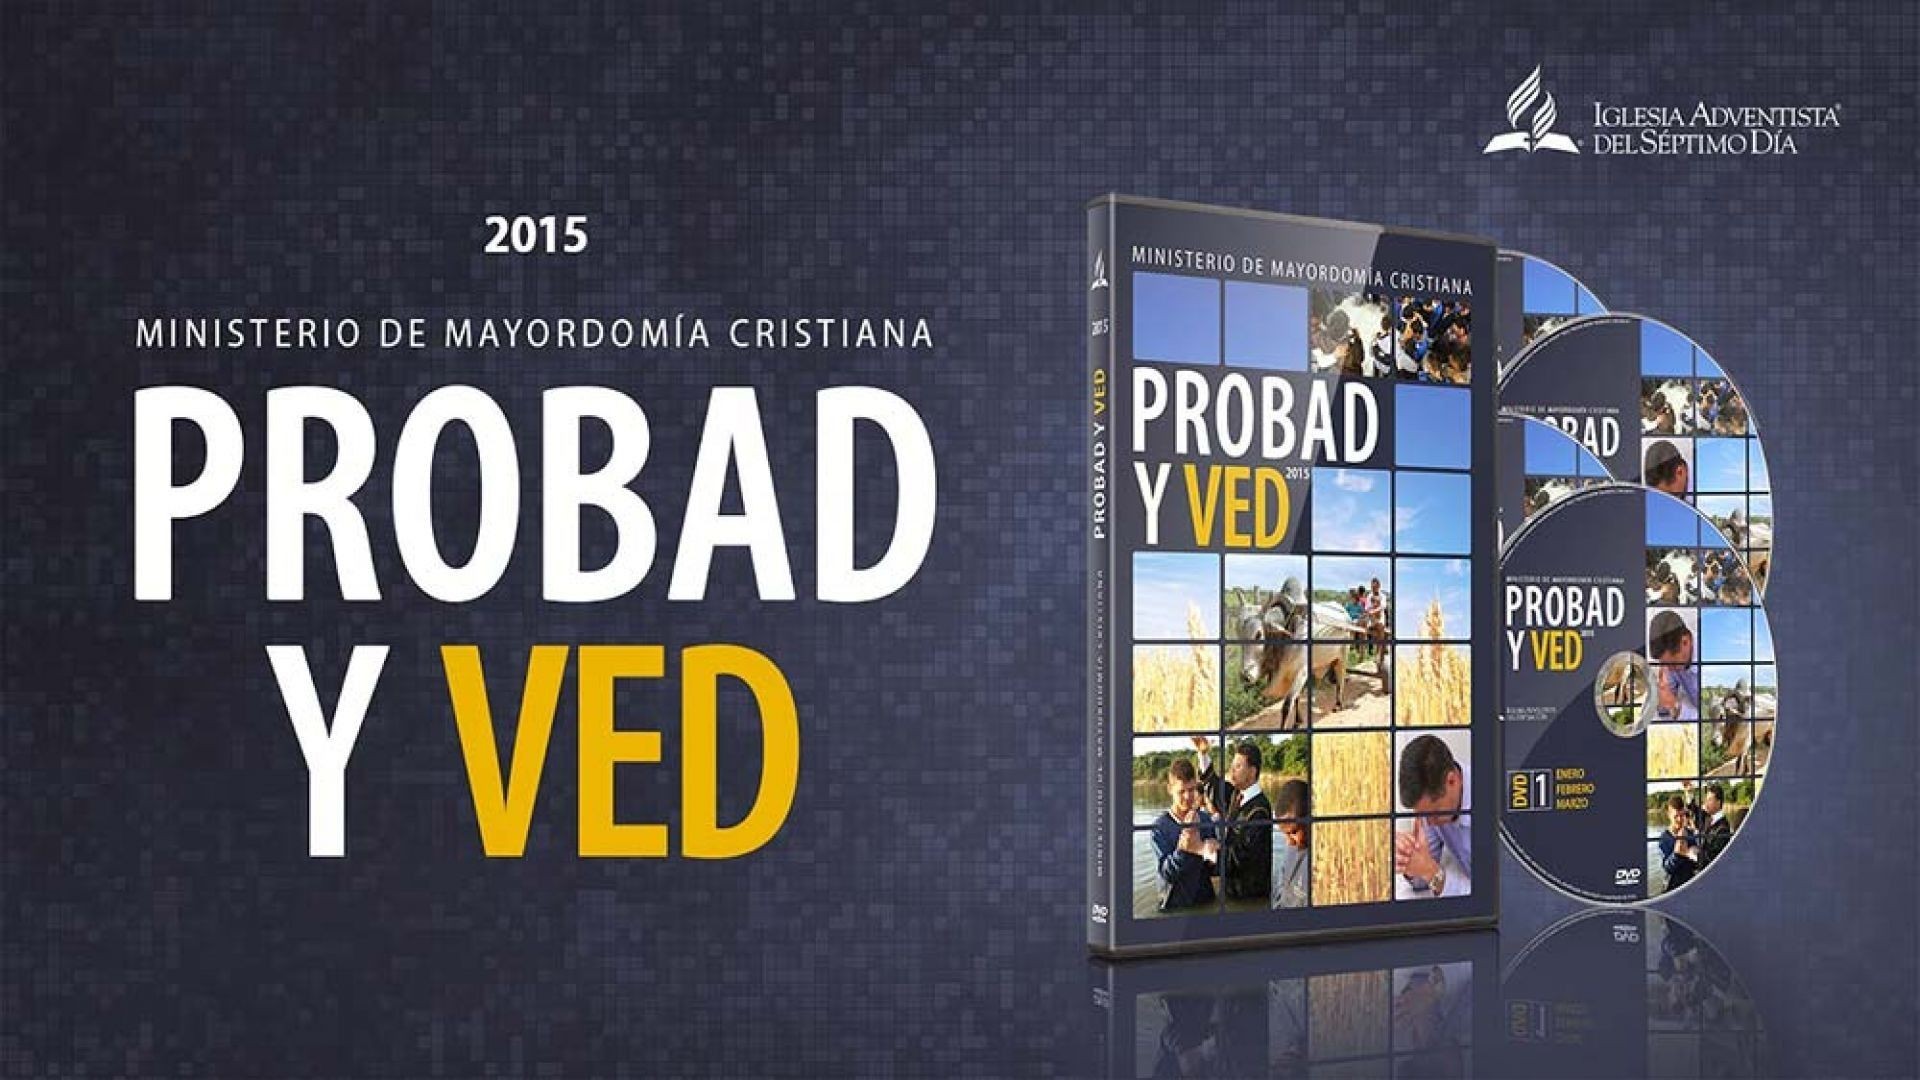 23/May. En el clima de la fe - Probad y Ved | Iglesia Adventista